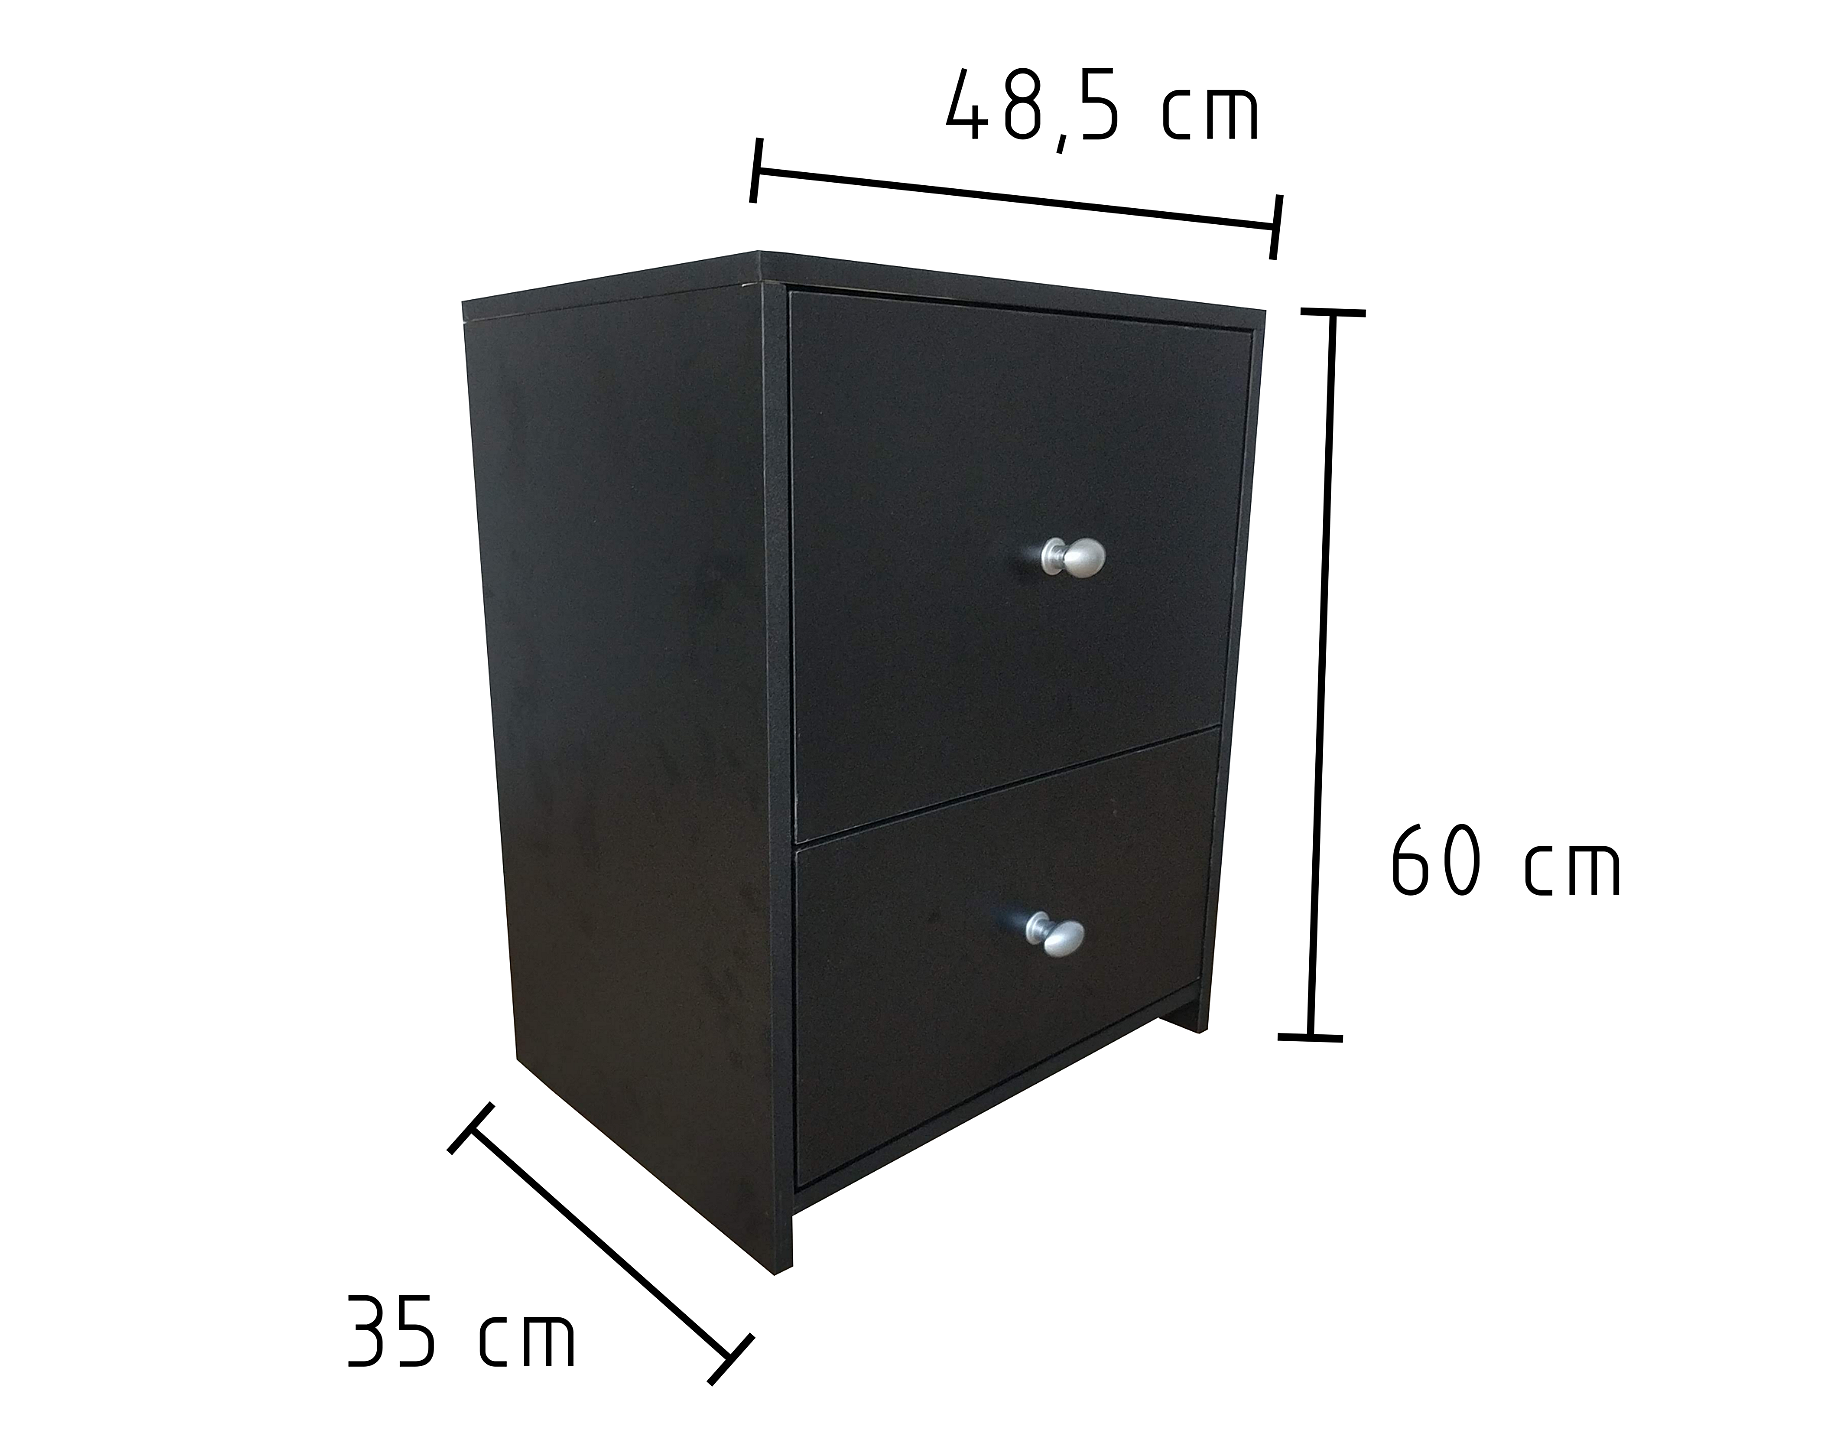 Para todos verem: Imagem com as dimensões do gaveteiro preto com 2 gavetas. O gaveteiro tem 60 cm de altura, 48,5 cm de largura e 35 cm de profundidade.